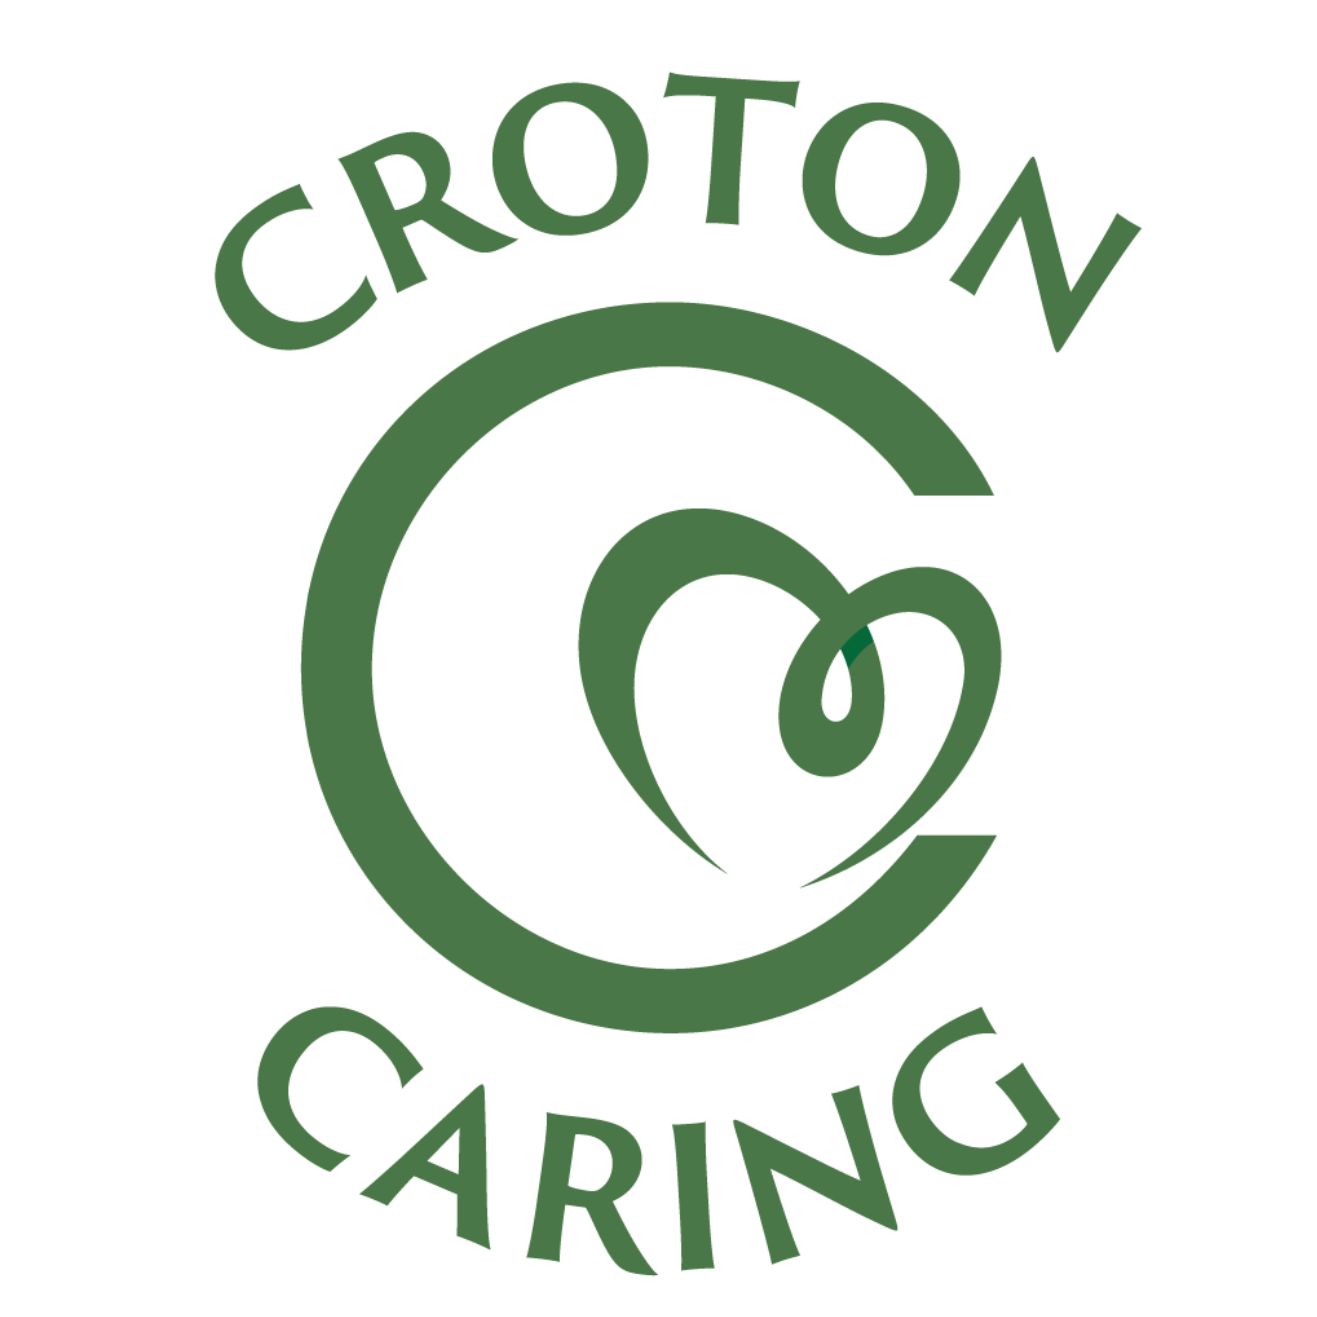 Croton Caring logo